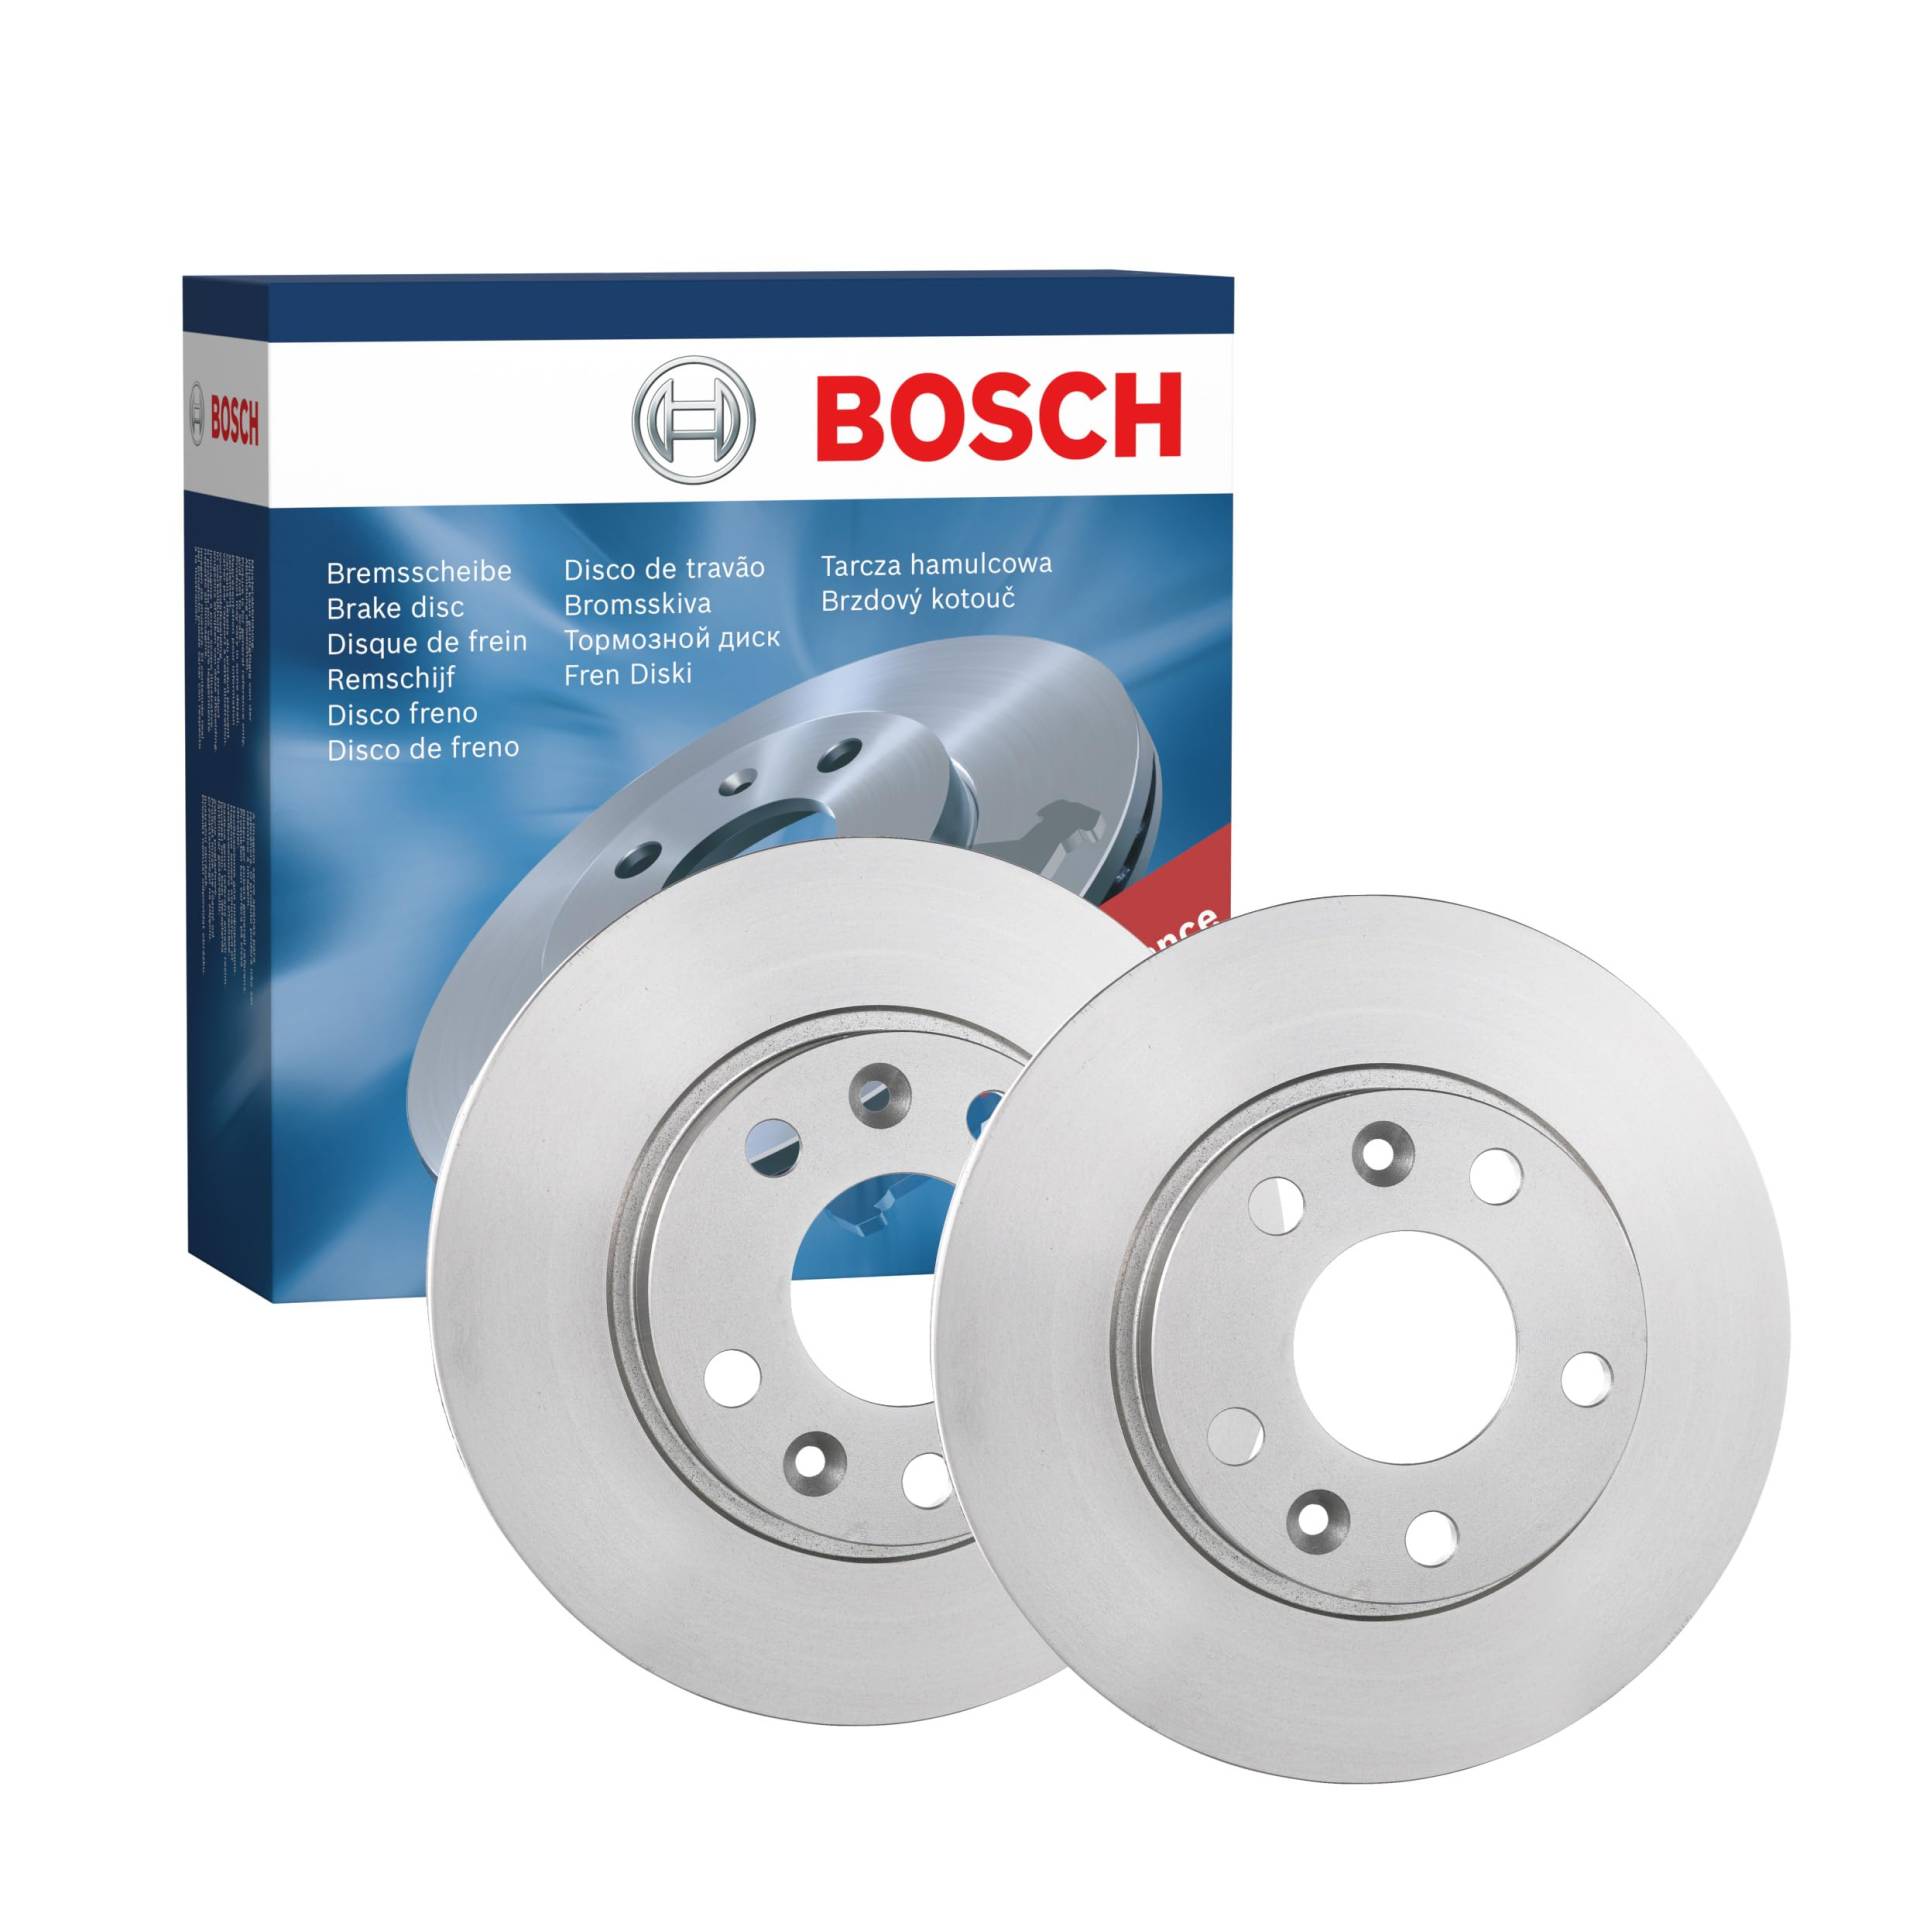 Bosch BD1609 Bremsscheiben - Vorderachse - ECE-R90 Zertifizierung - zwei Bremsscheiben pro Set von Bosch Automotive